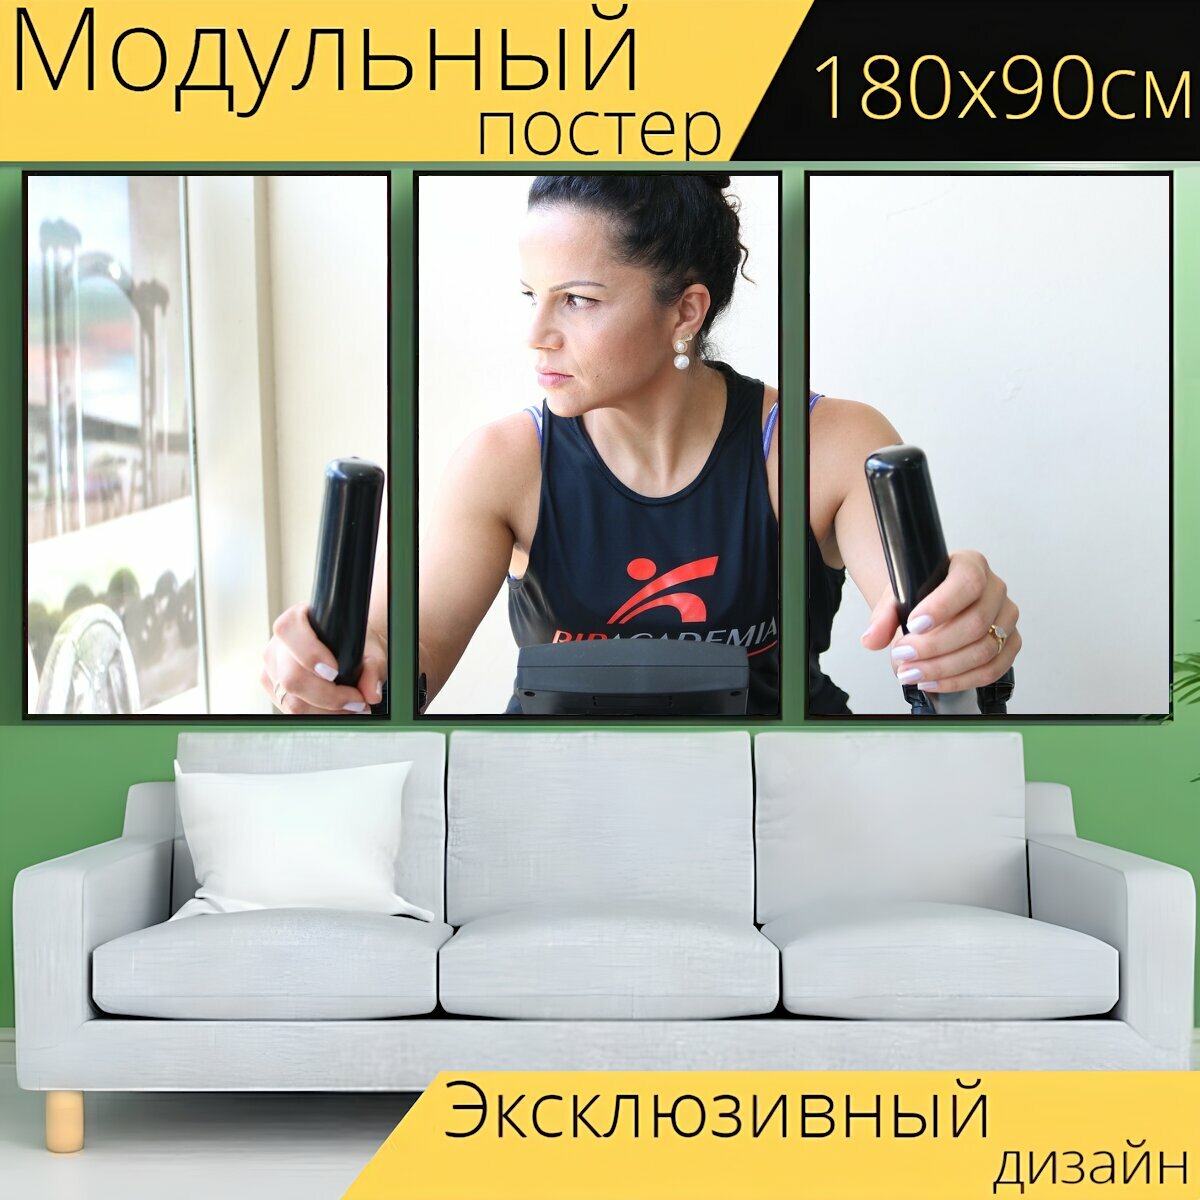 Модульный постер "Упражнение, спортзал, фитнес" 180 x 90 см. для интерьера